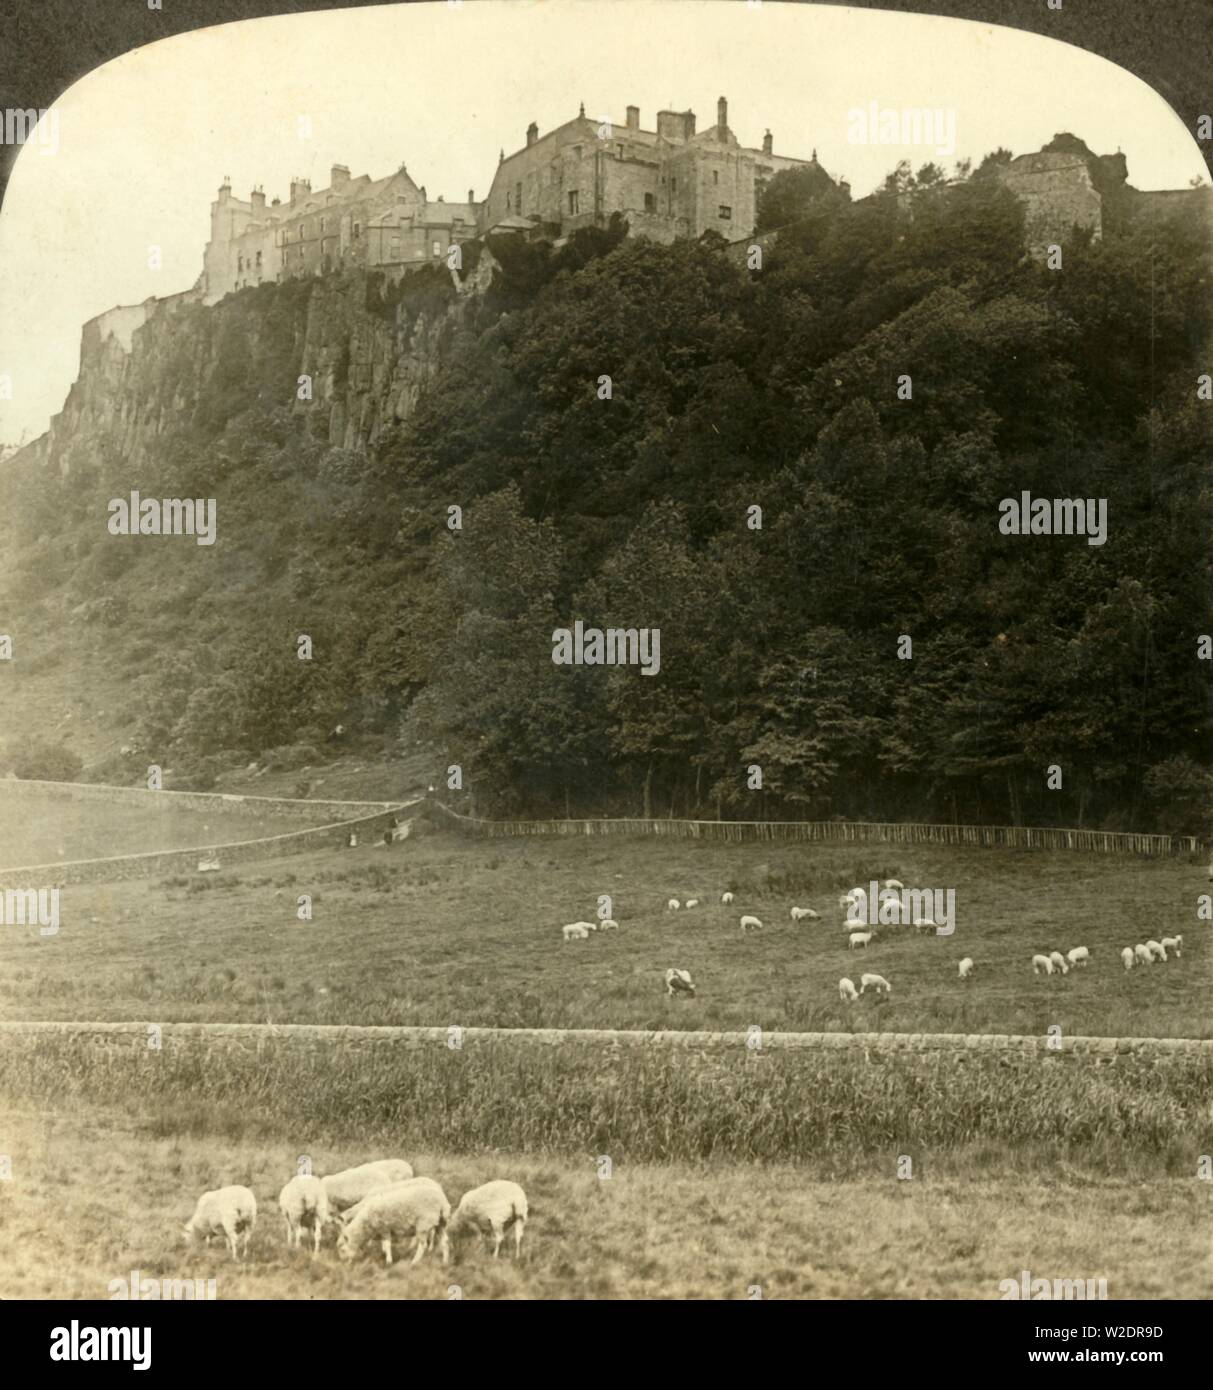 'Stirling castello, sede del vecchio re...Scozia', C1900. Creatore: Underwood & Underwood. Foto Stock